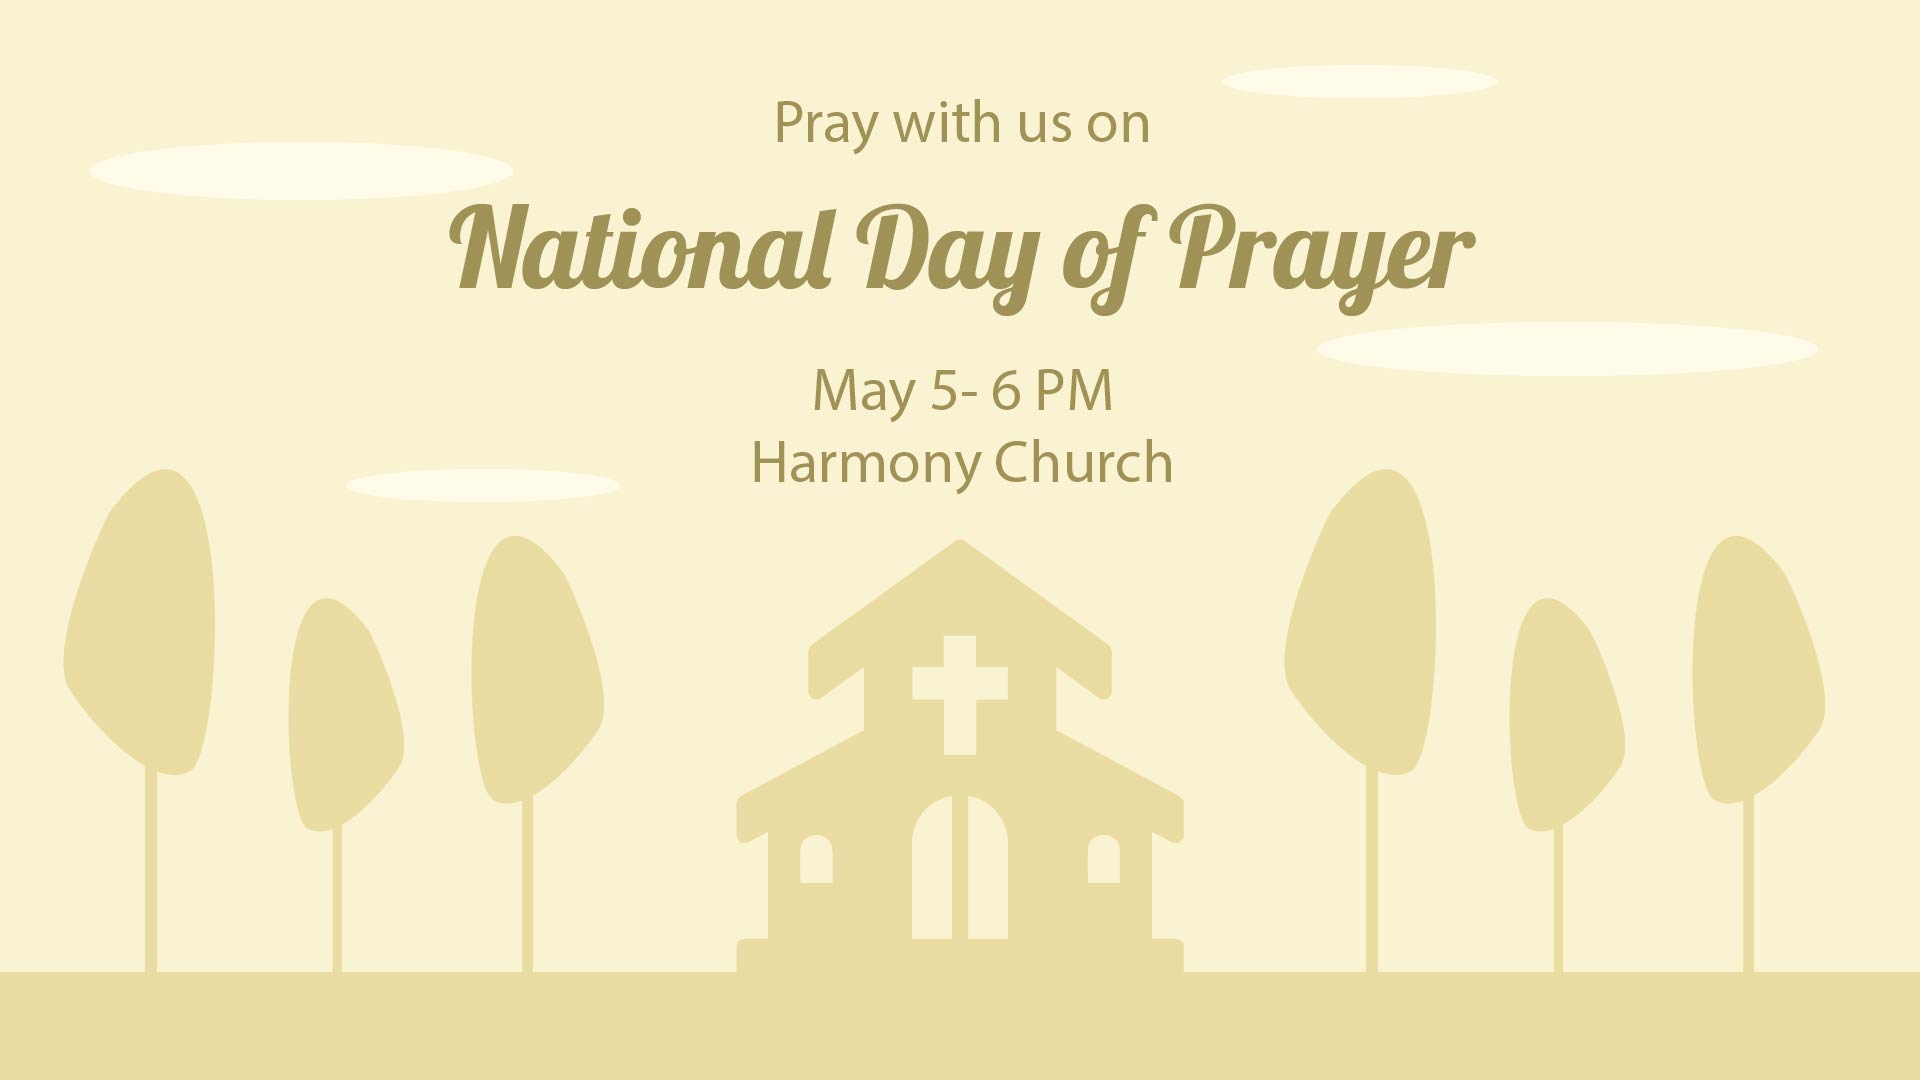 National Day of Prayer Invitation Background